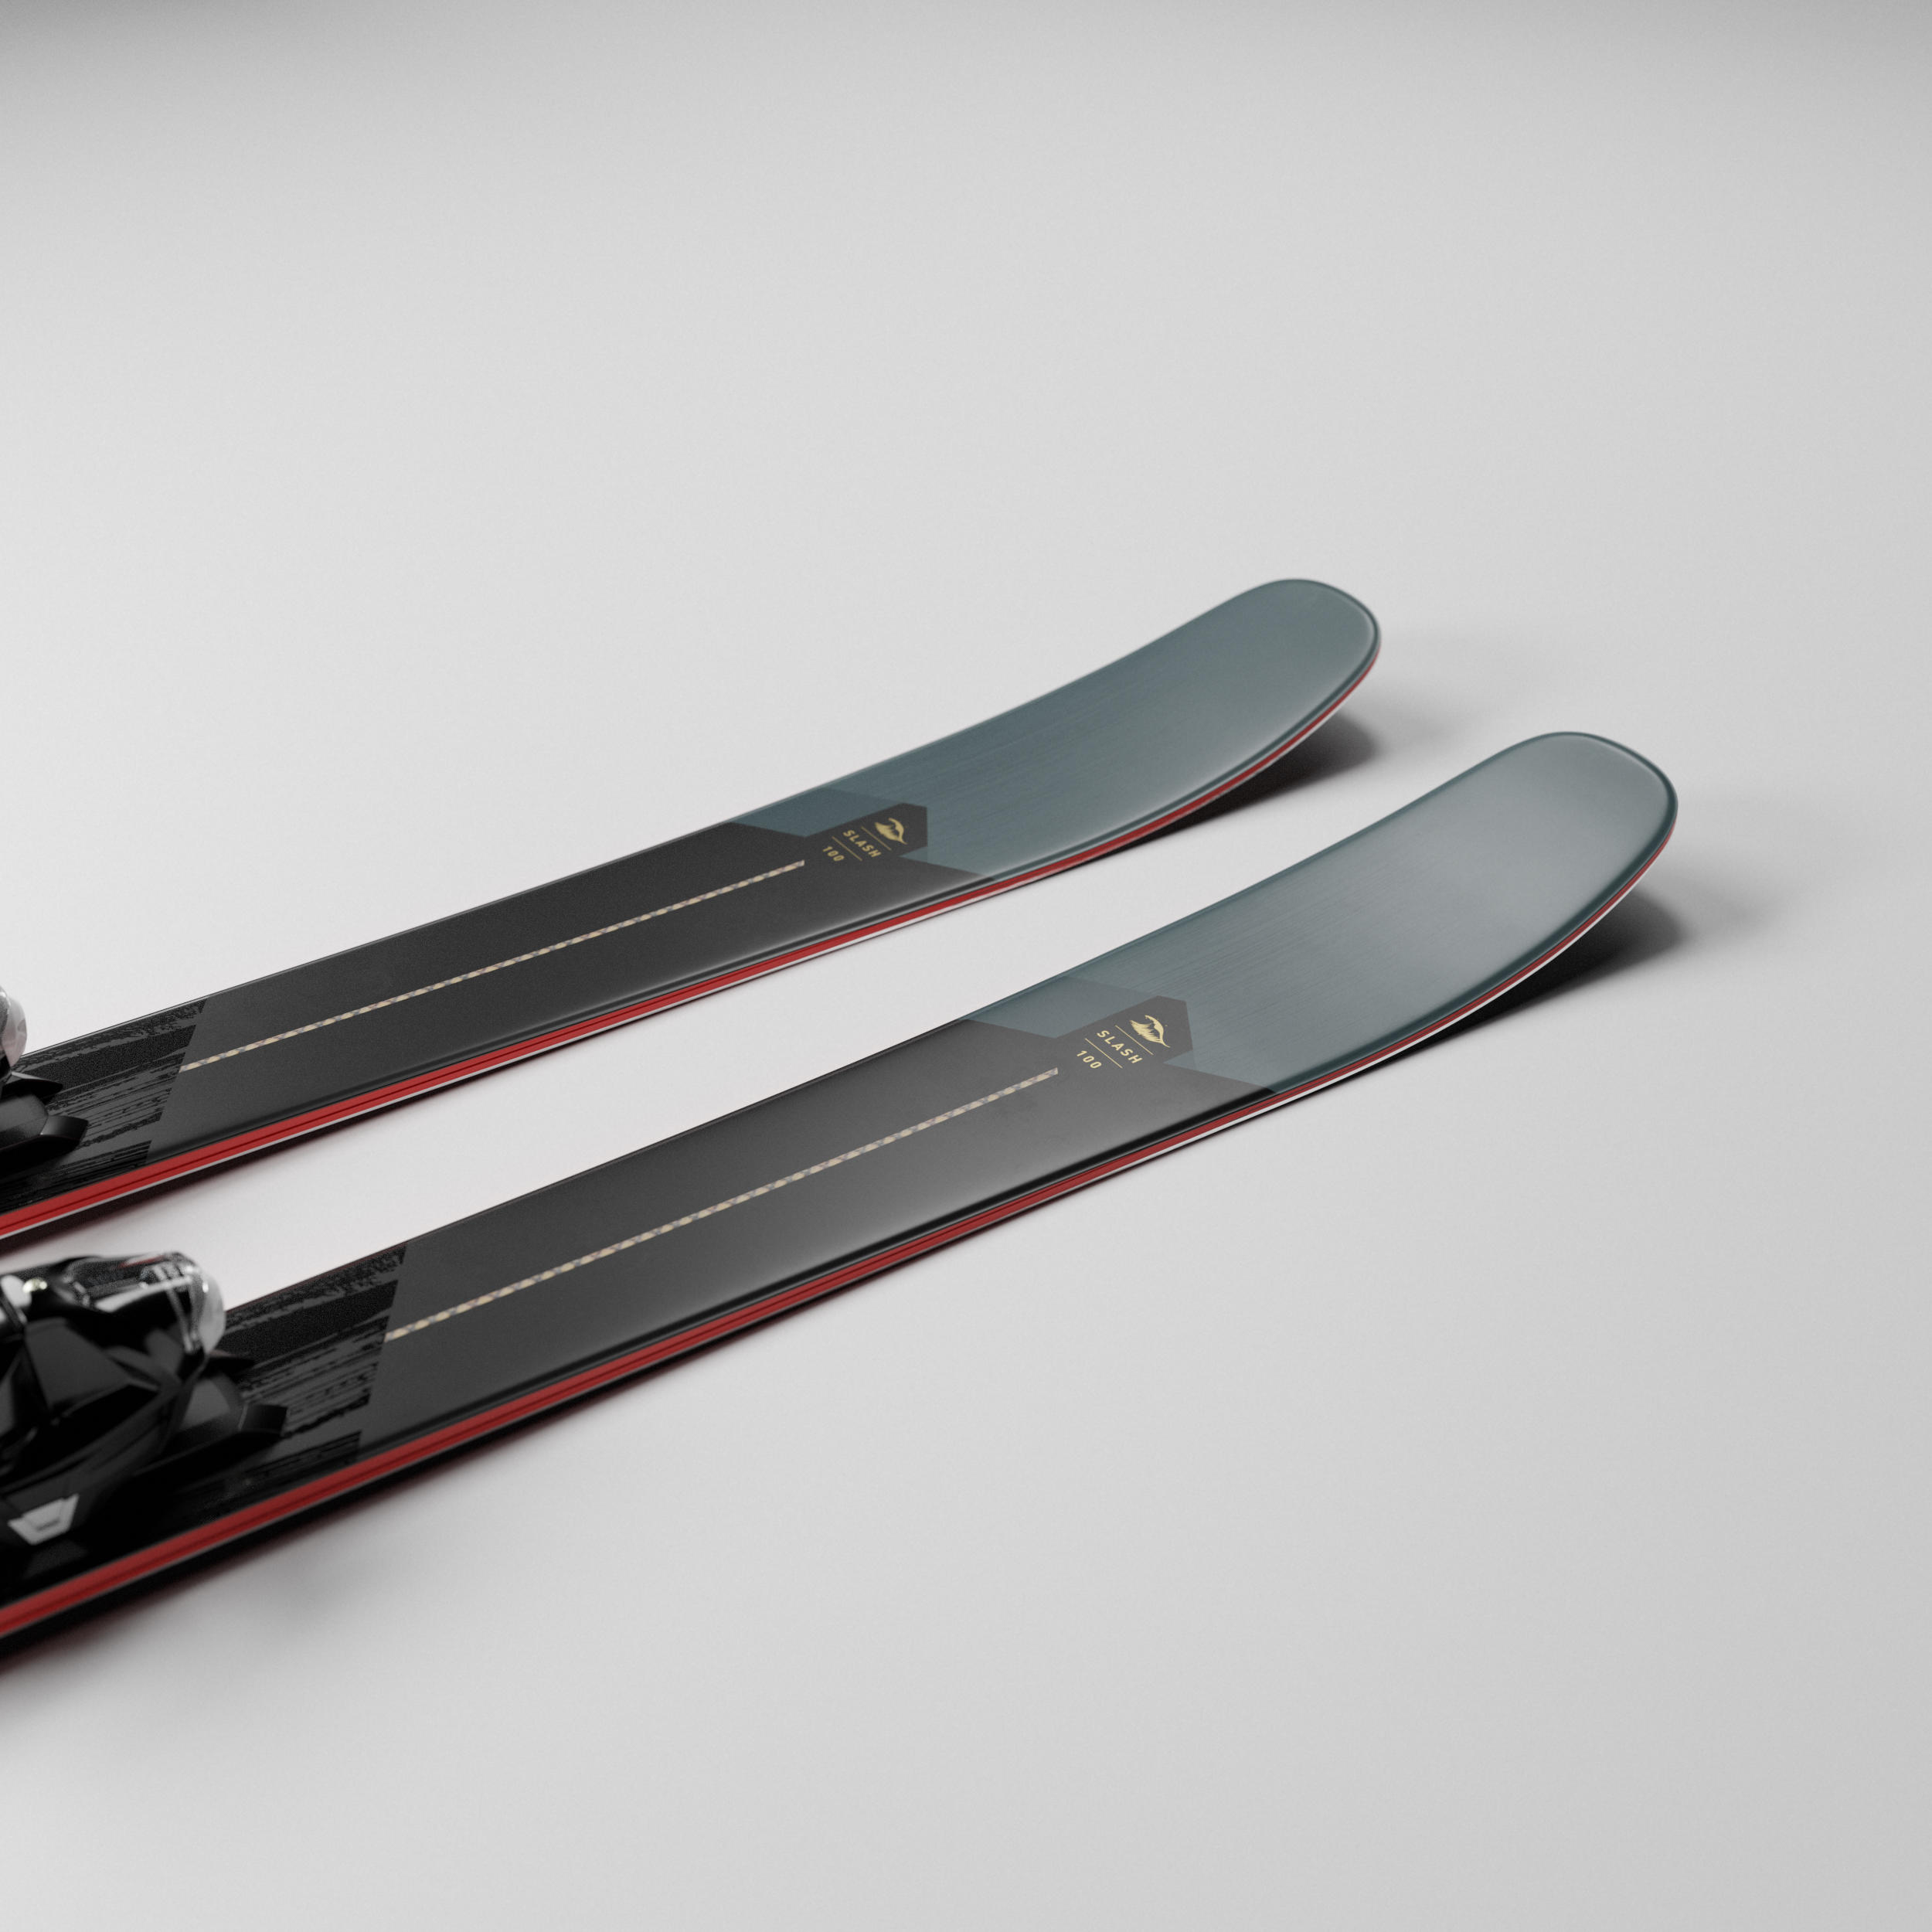 Freeride Skis and Bindings - Slash 100 - WEDZE